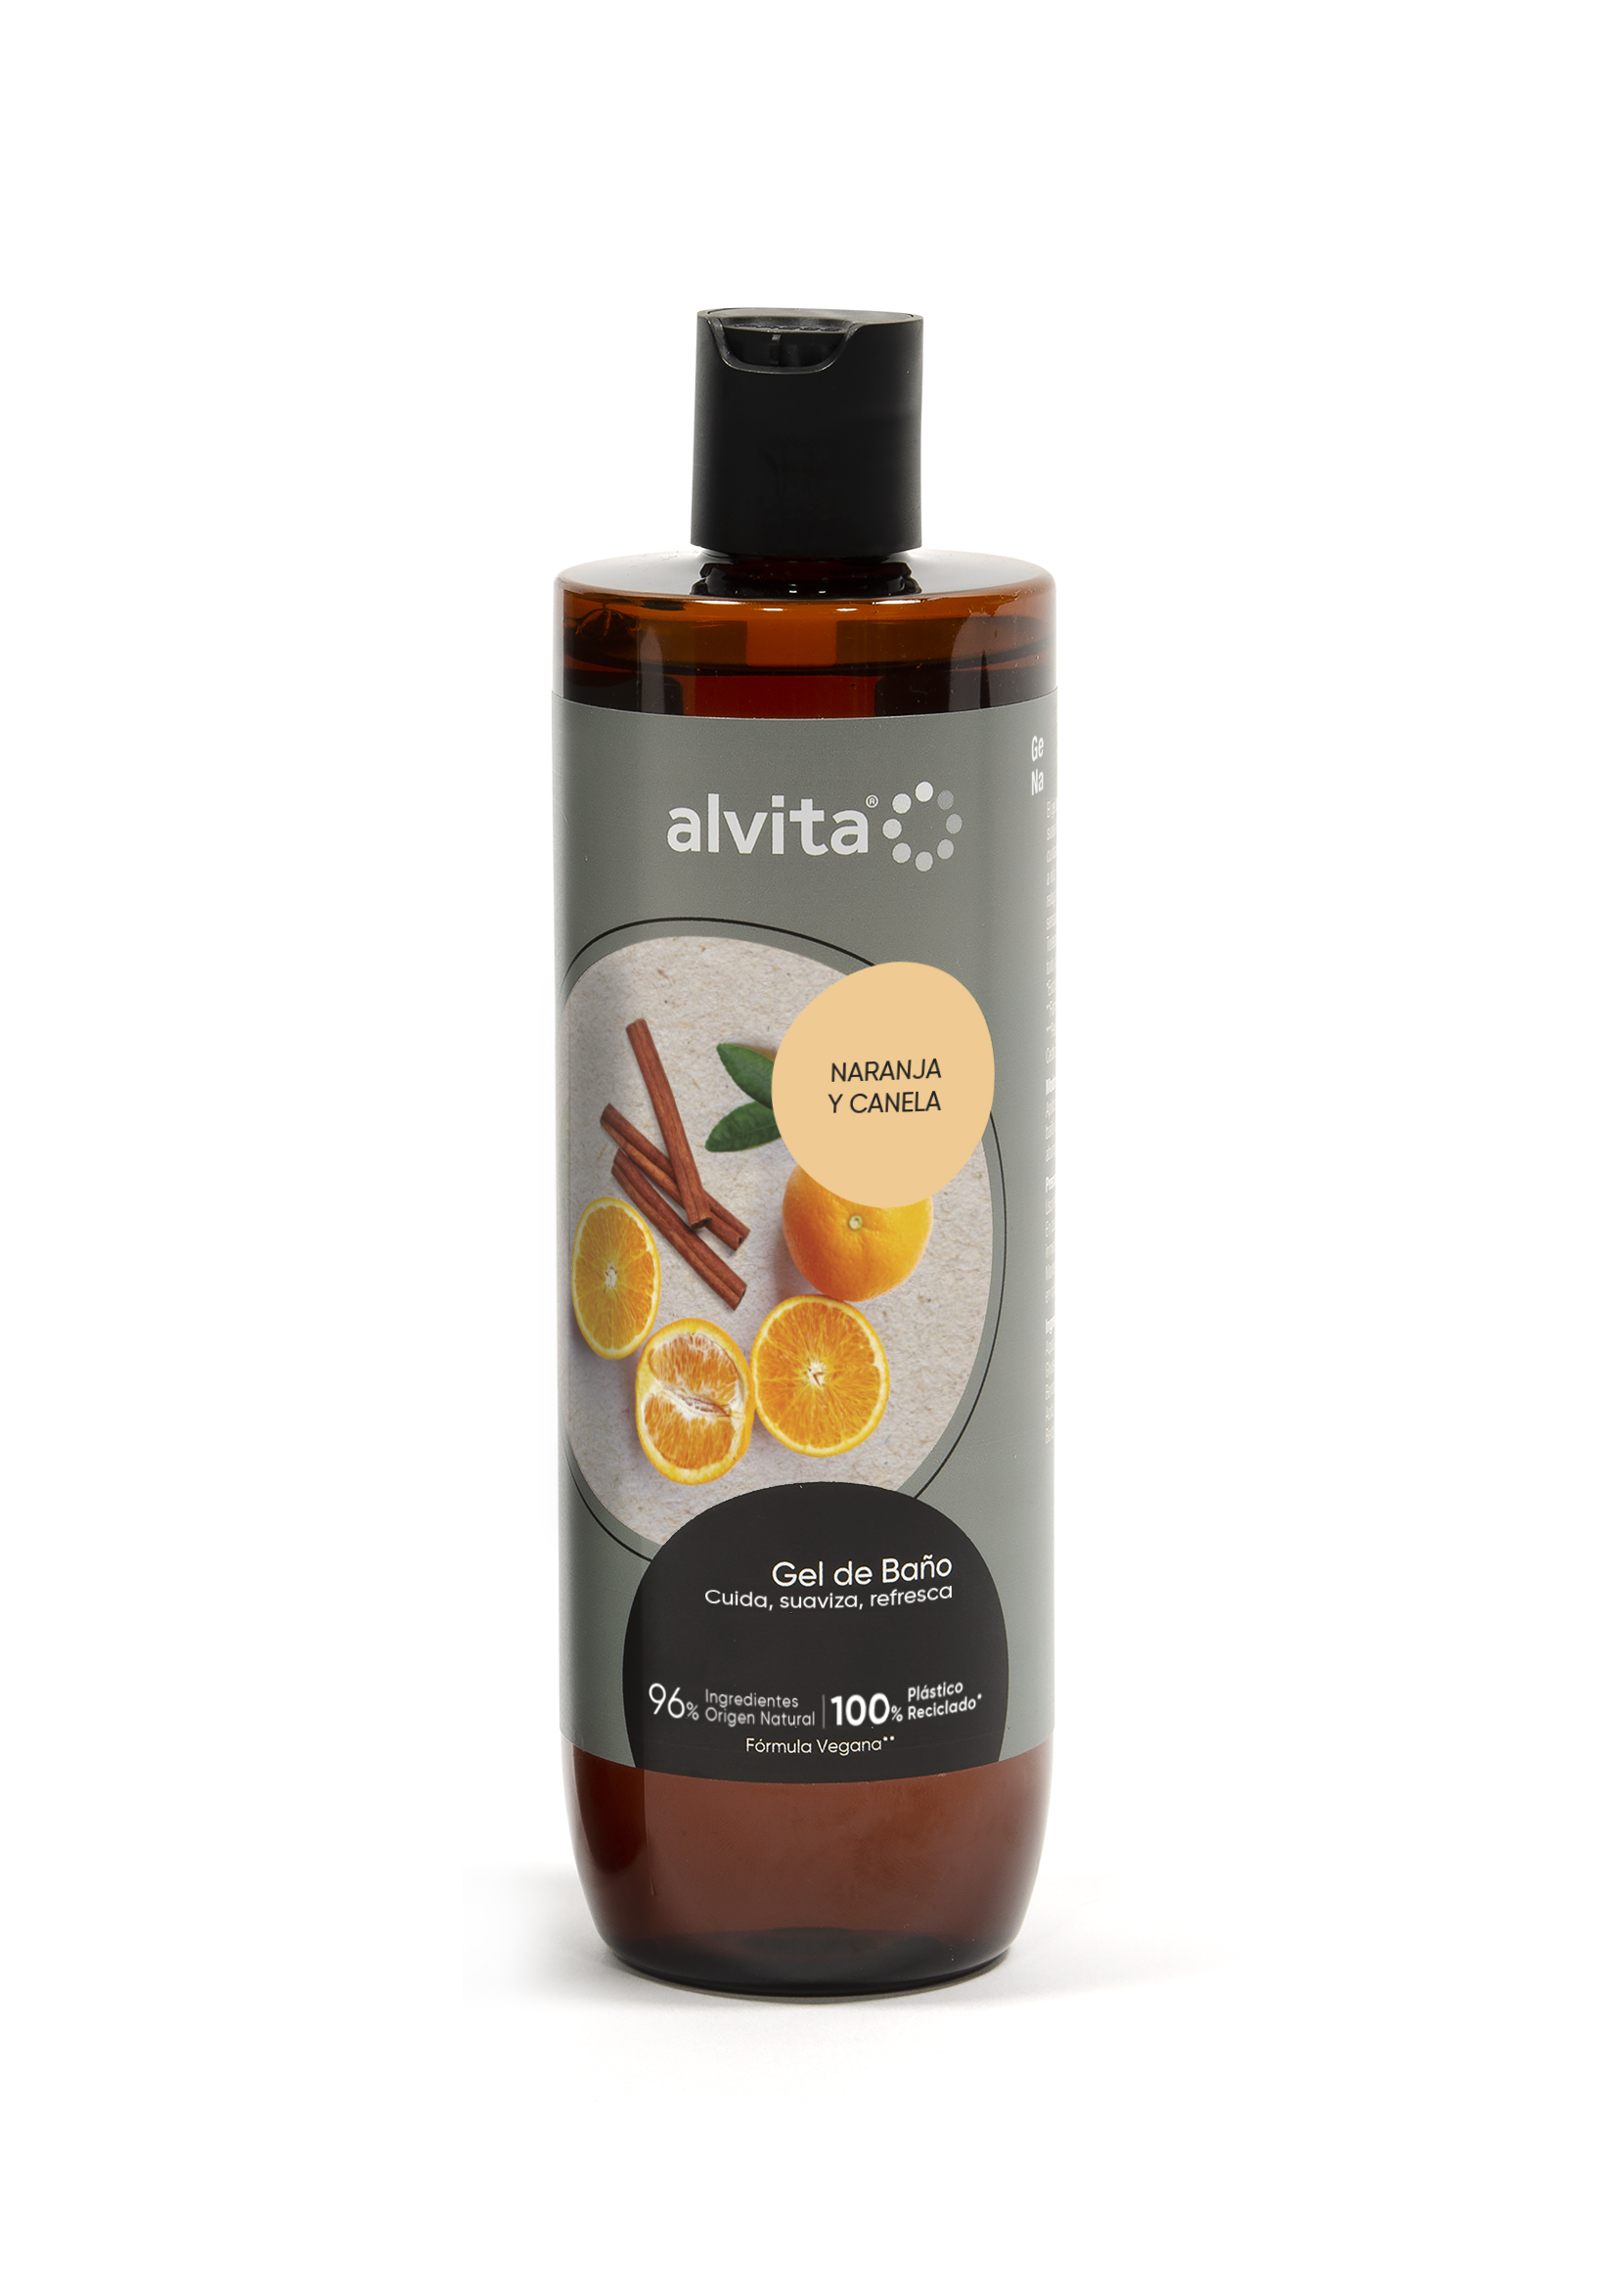 Alvita amplía su gama de geles sostenibles con el lanzamiento de la nueva fragancia Naranja y Canela